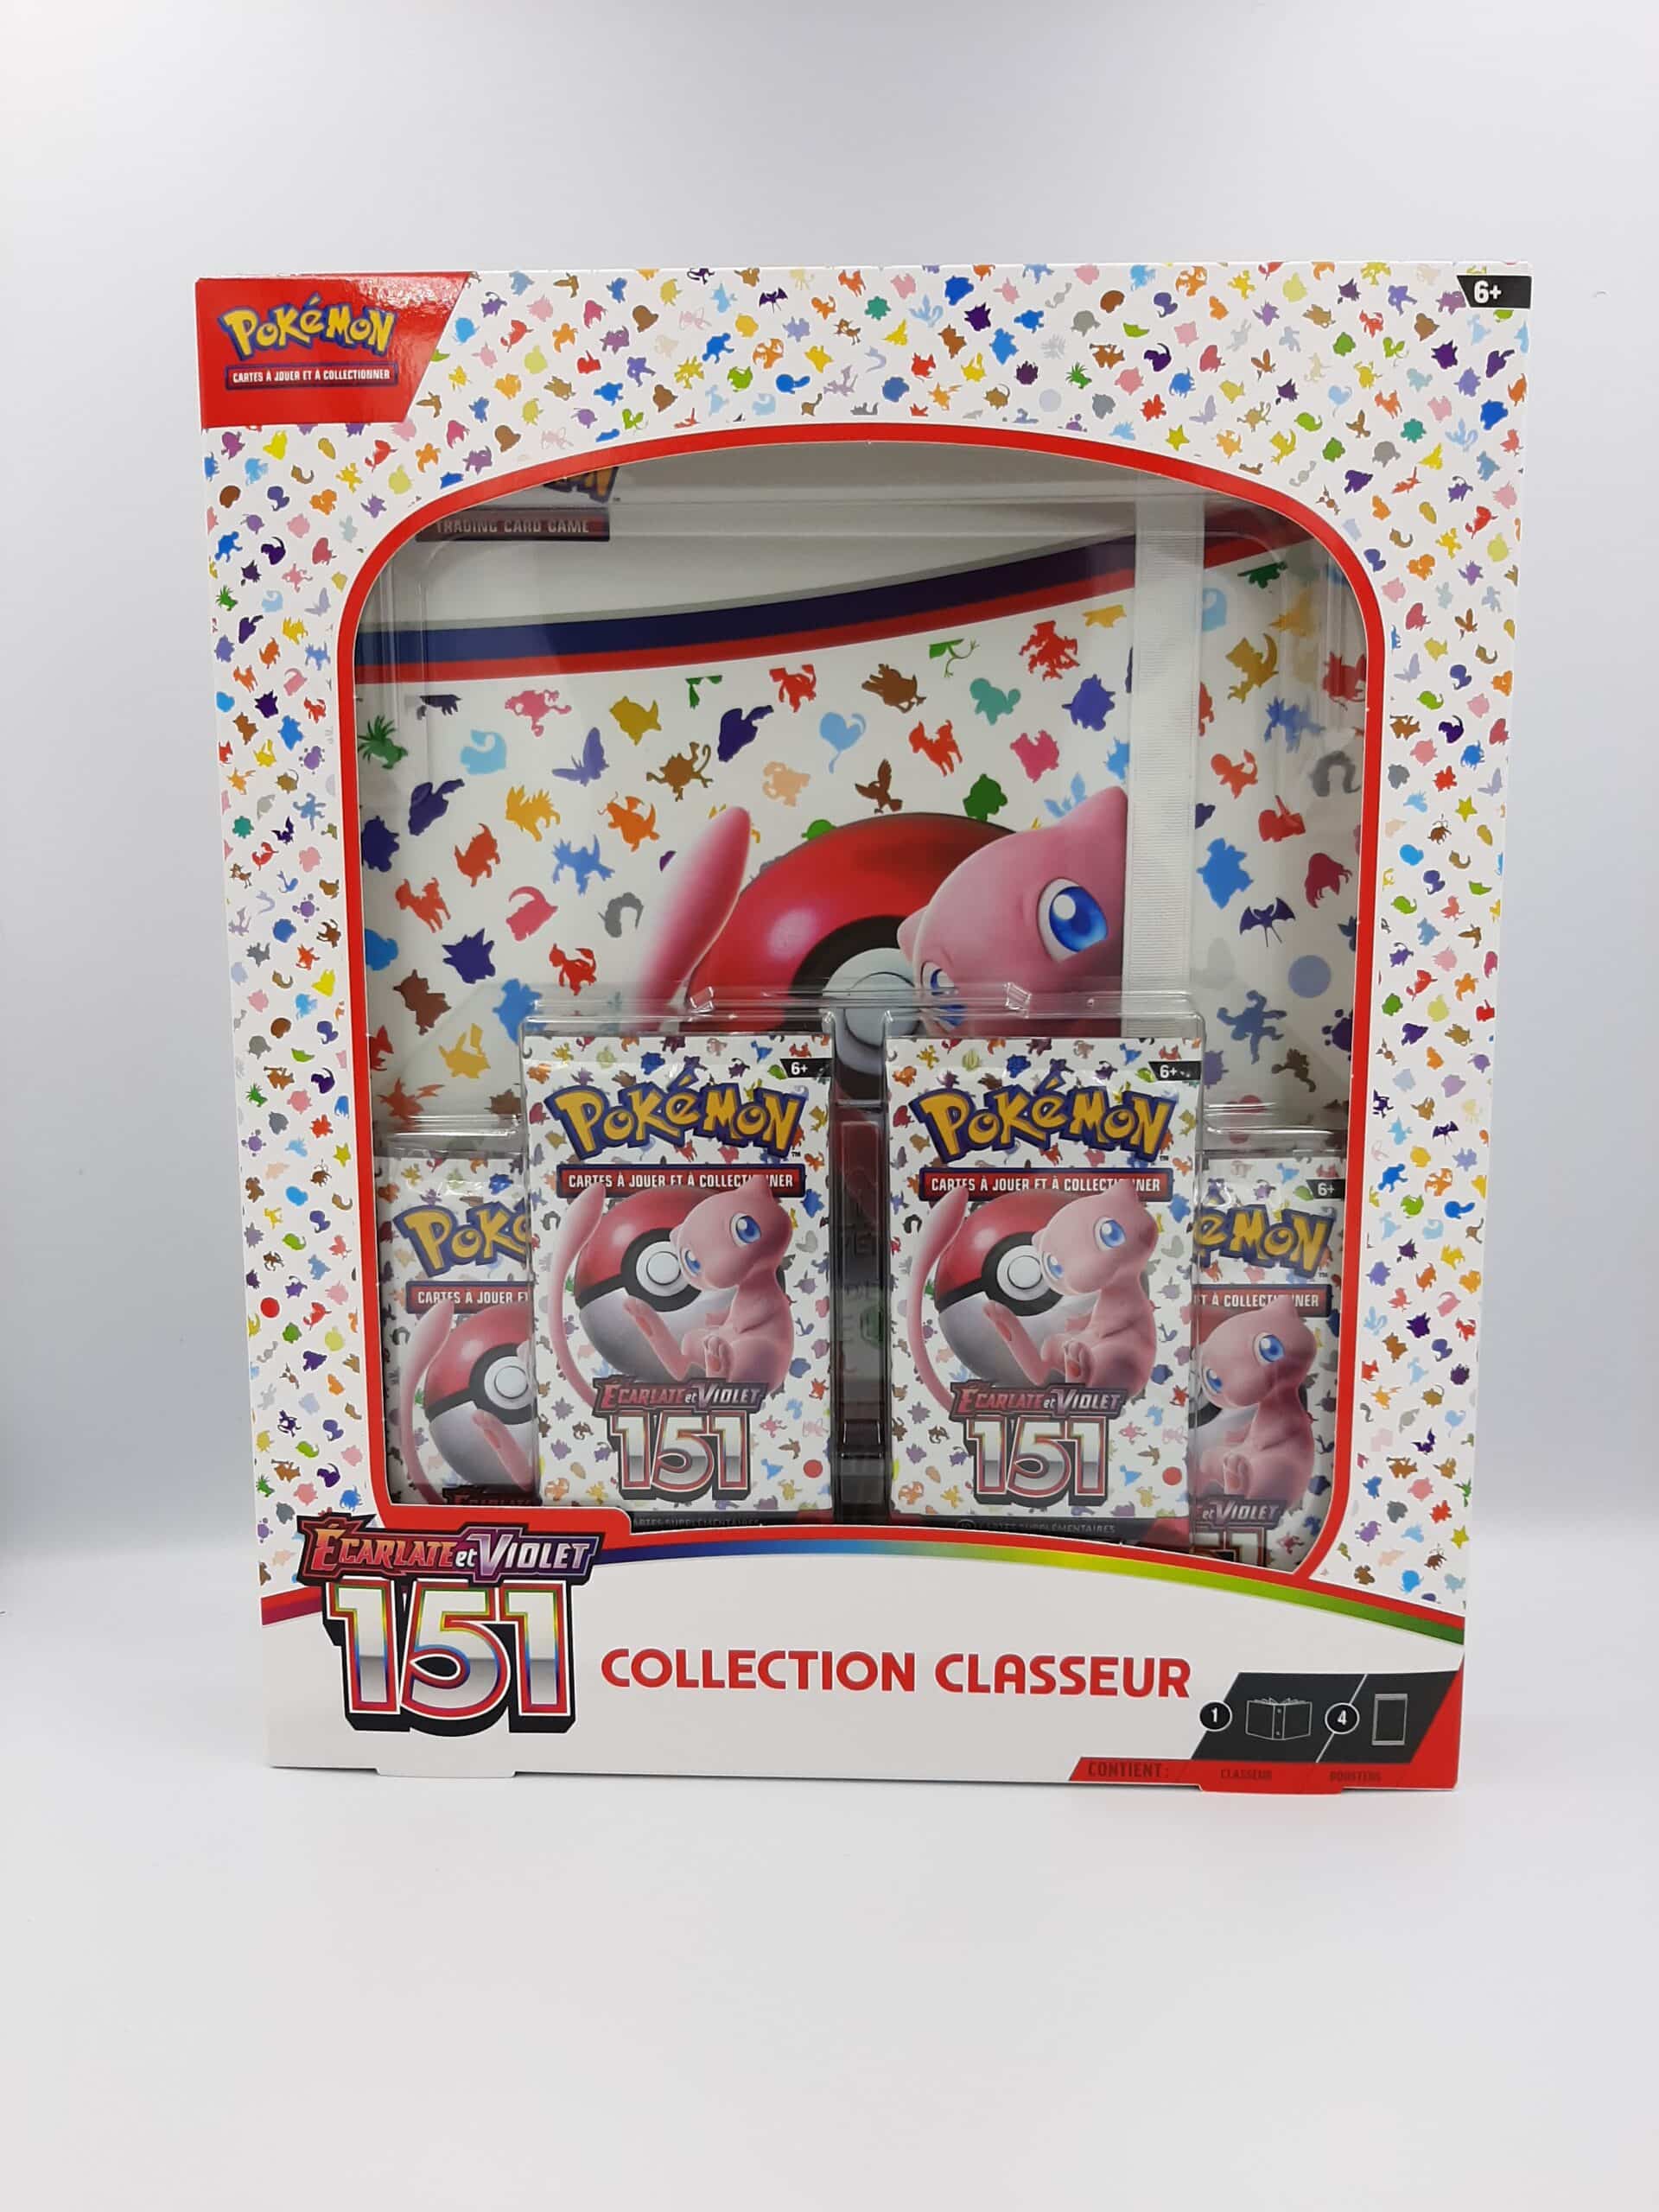 Collection Classeur Ecarlate Et Violet 151 / Pokemon JCC